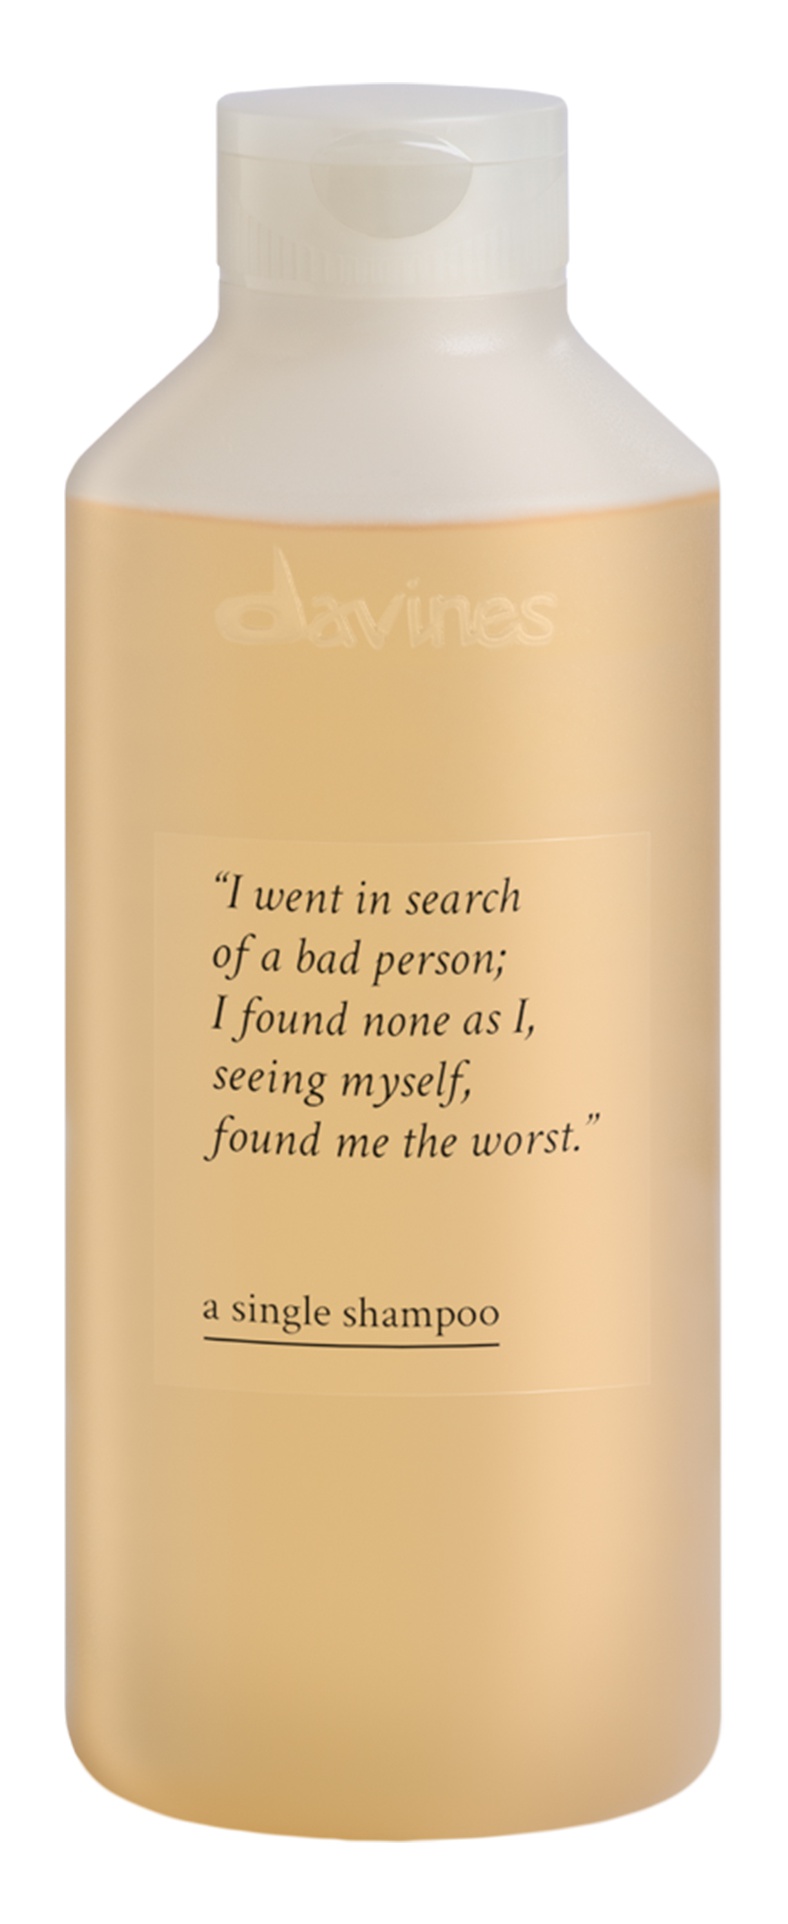 Davines A Single Shampoo